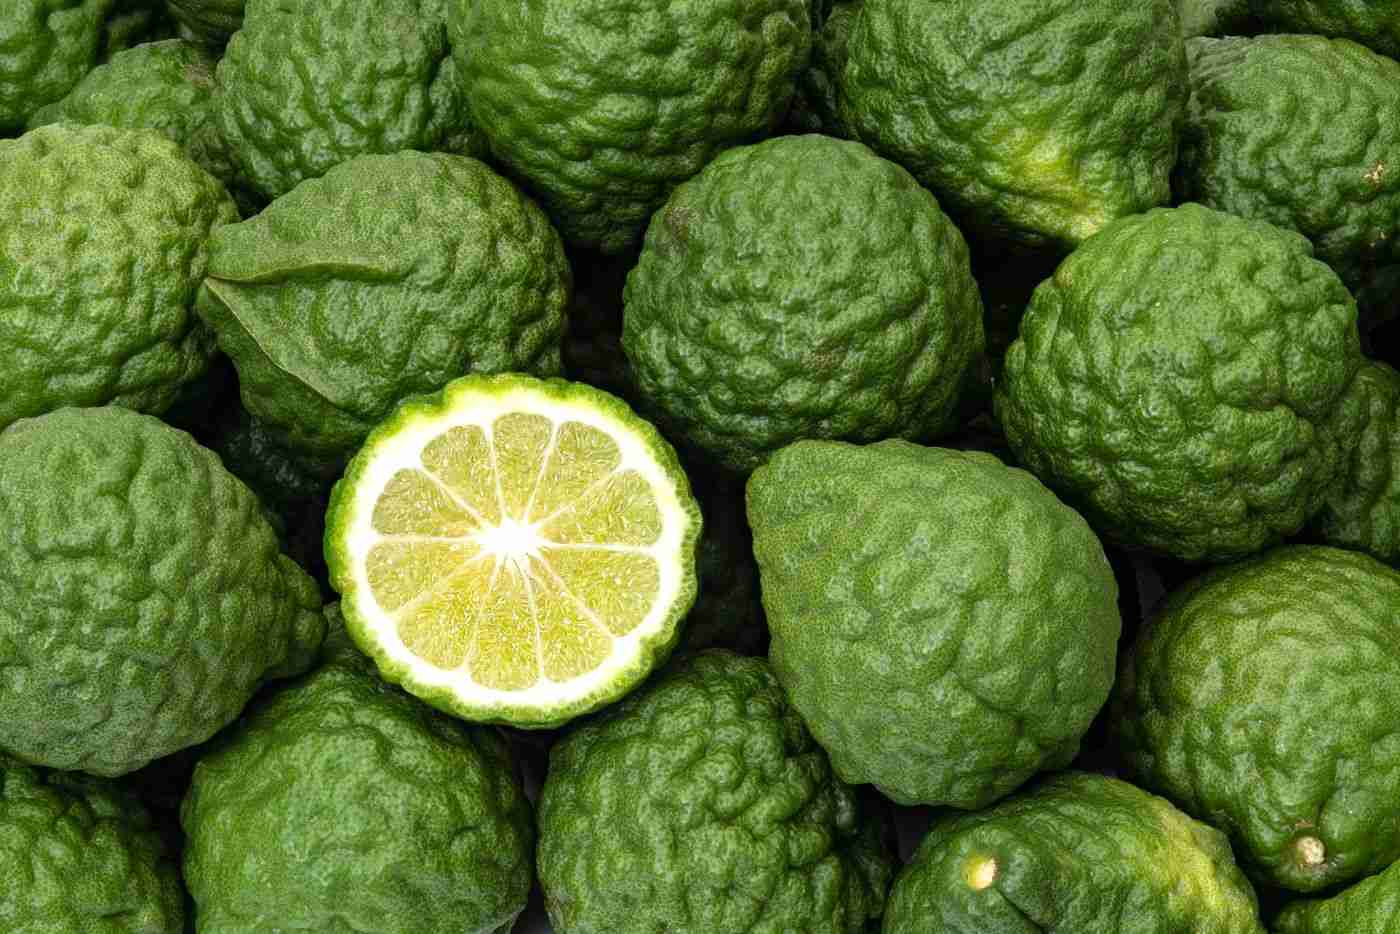 Bergamott citronarom och smak av citrusfrukter